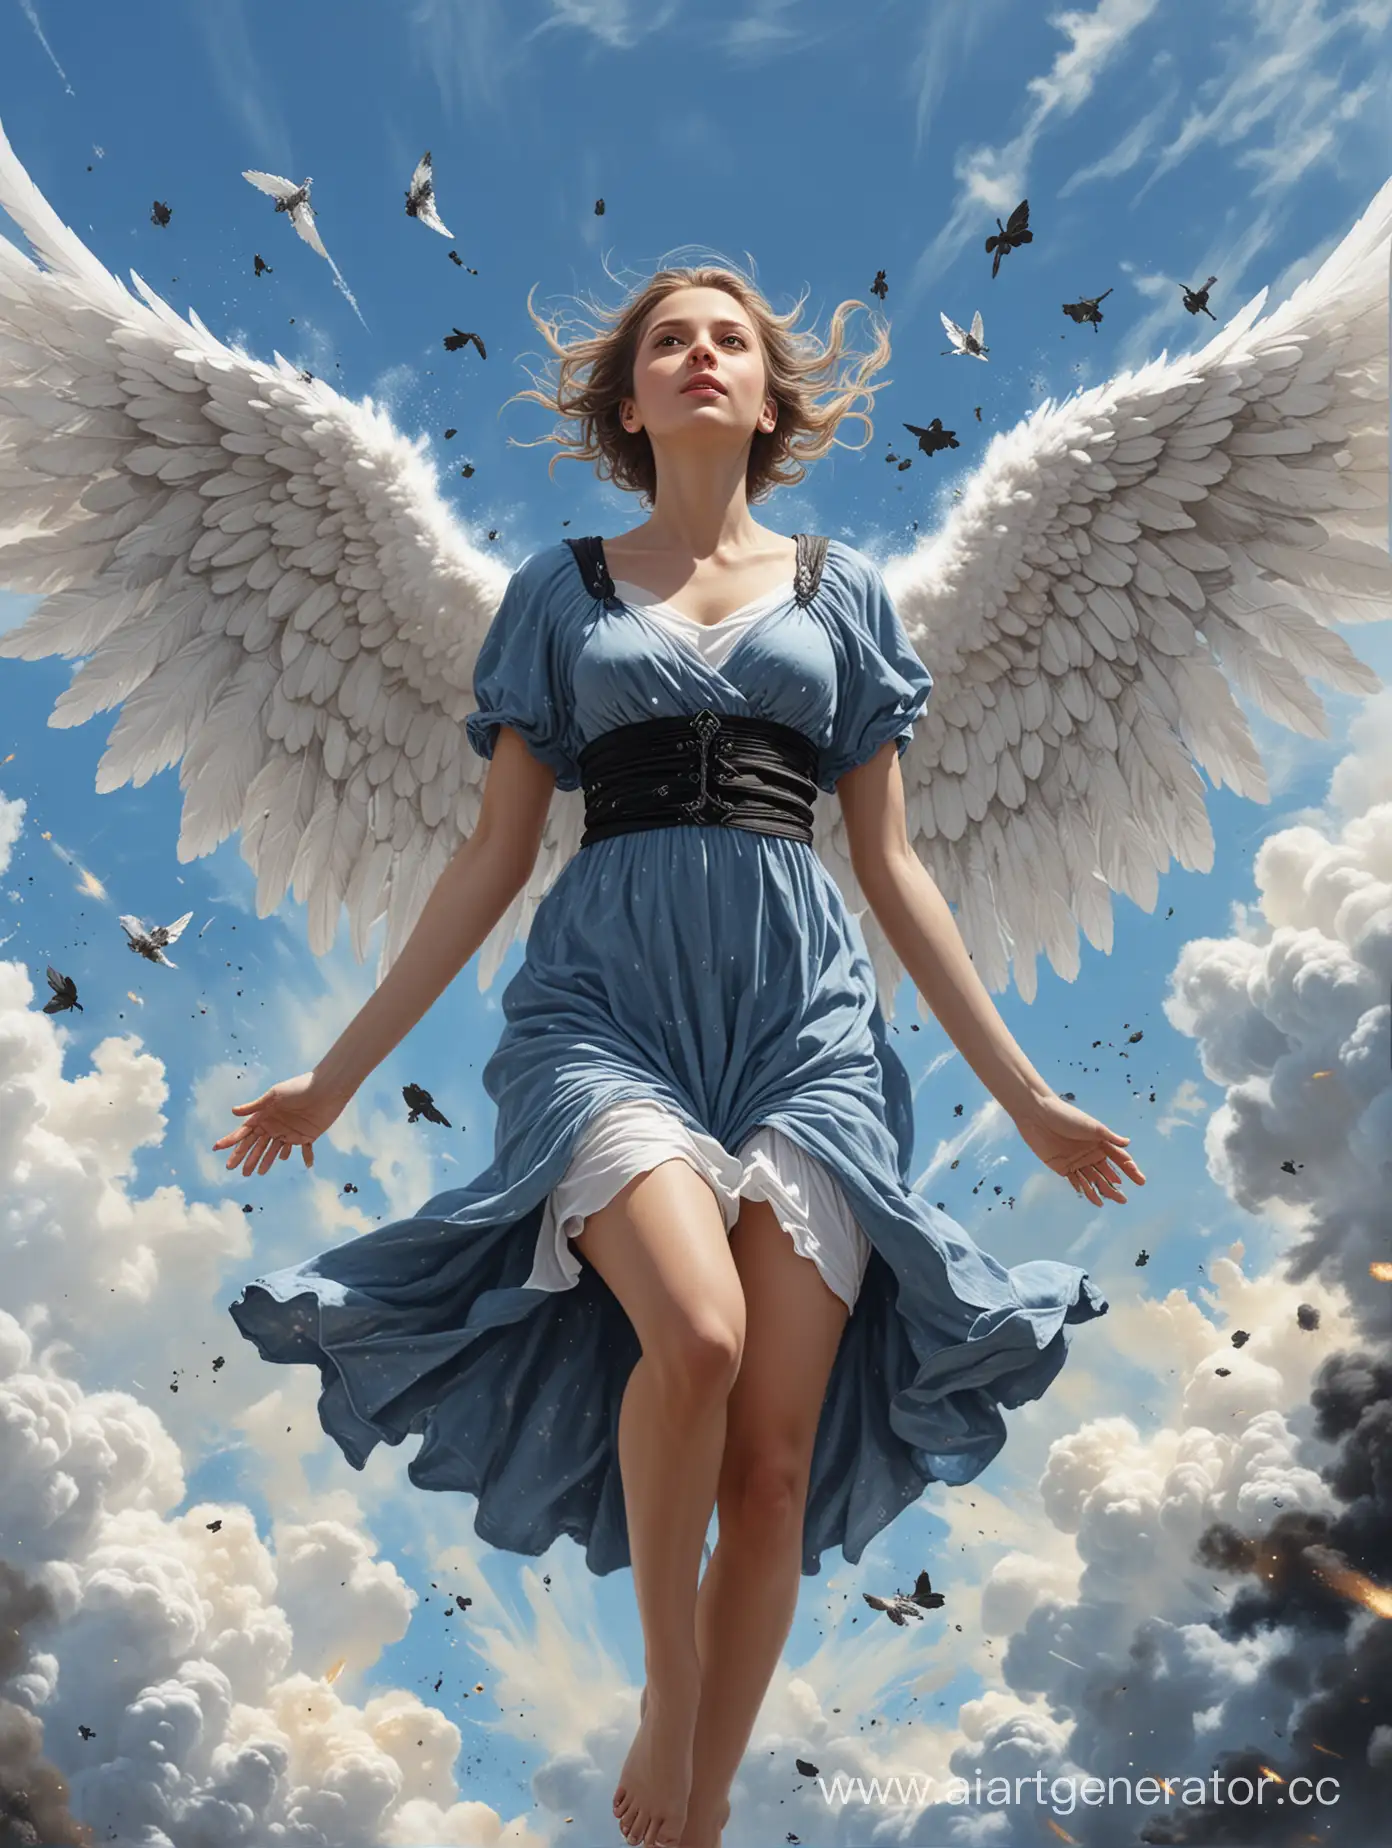 Ангел с четырьмя крыльями, нижние из них маленькие, правые крылья черные, левые крылья белые, одежда черно-белая, завис в полете спиной к зрителю, на фоне голубого неба и взрывов